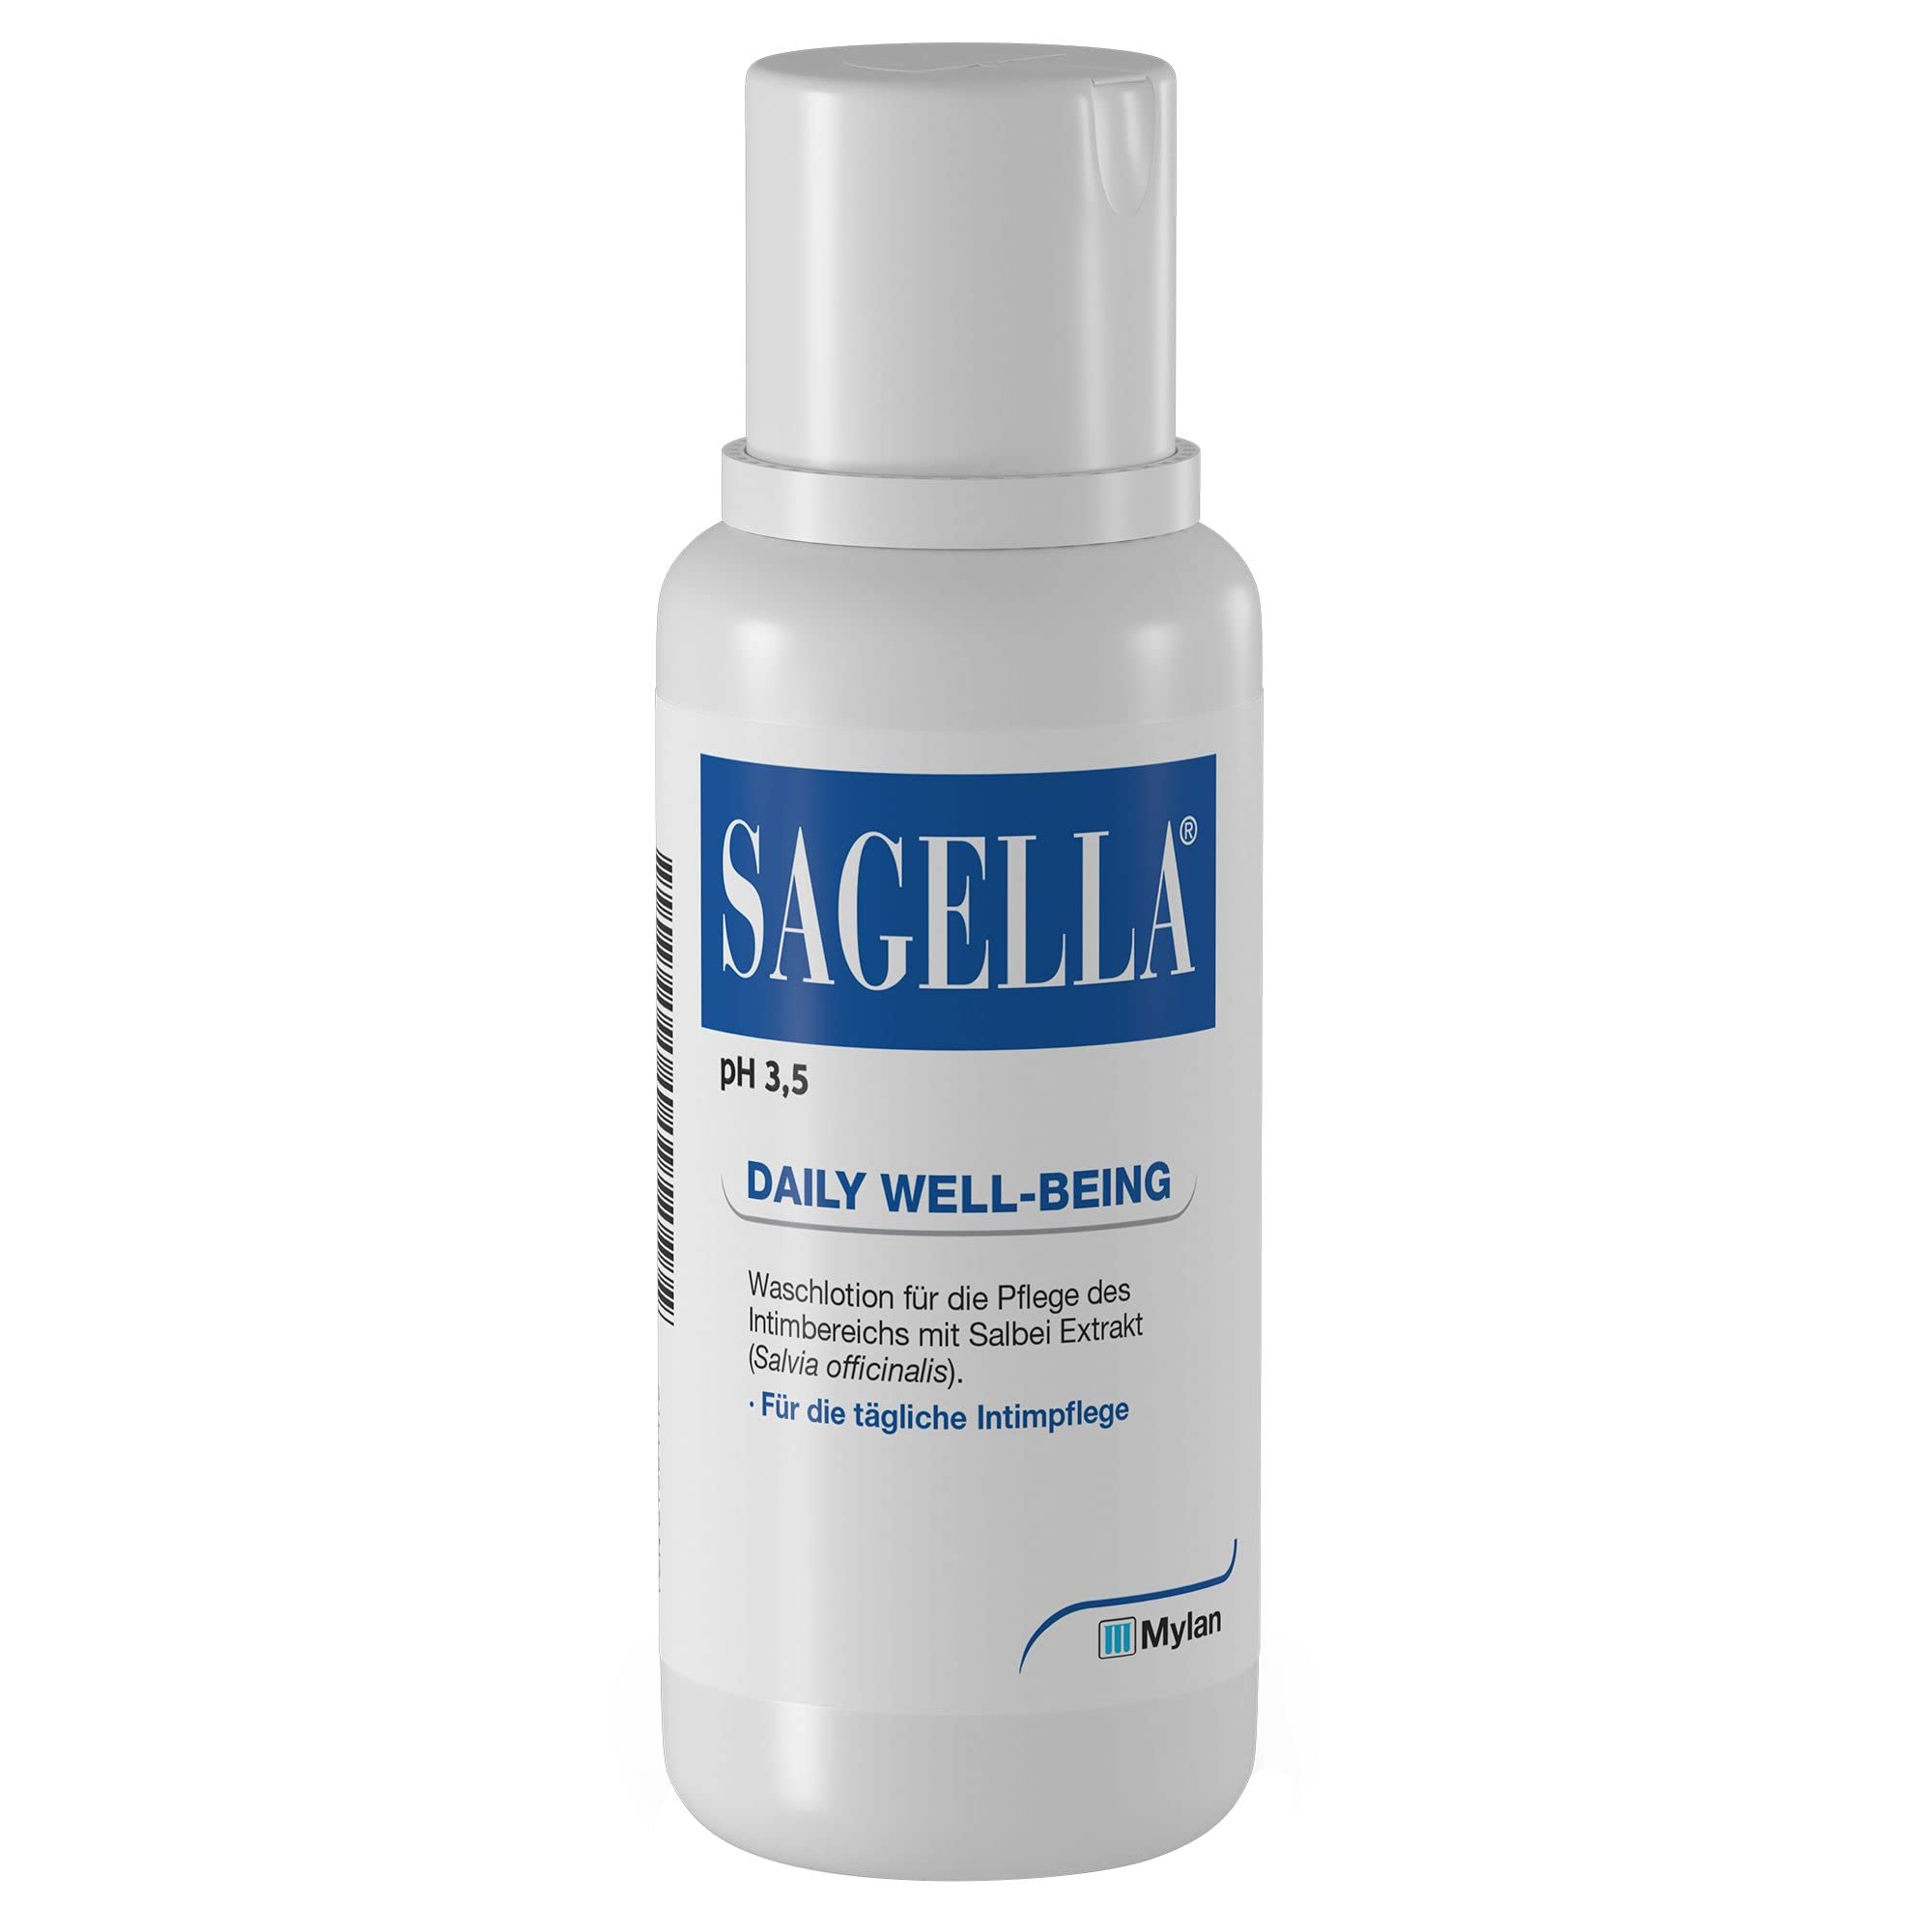 SAGELLA pH 3,5 – DAILY WELL-BEING: Intimwaschlotion mit Milchsäure und Salbei-Extrakt für die tägliche Intimpflege, 500 ml